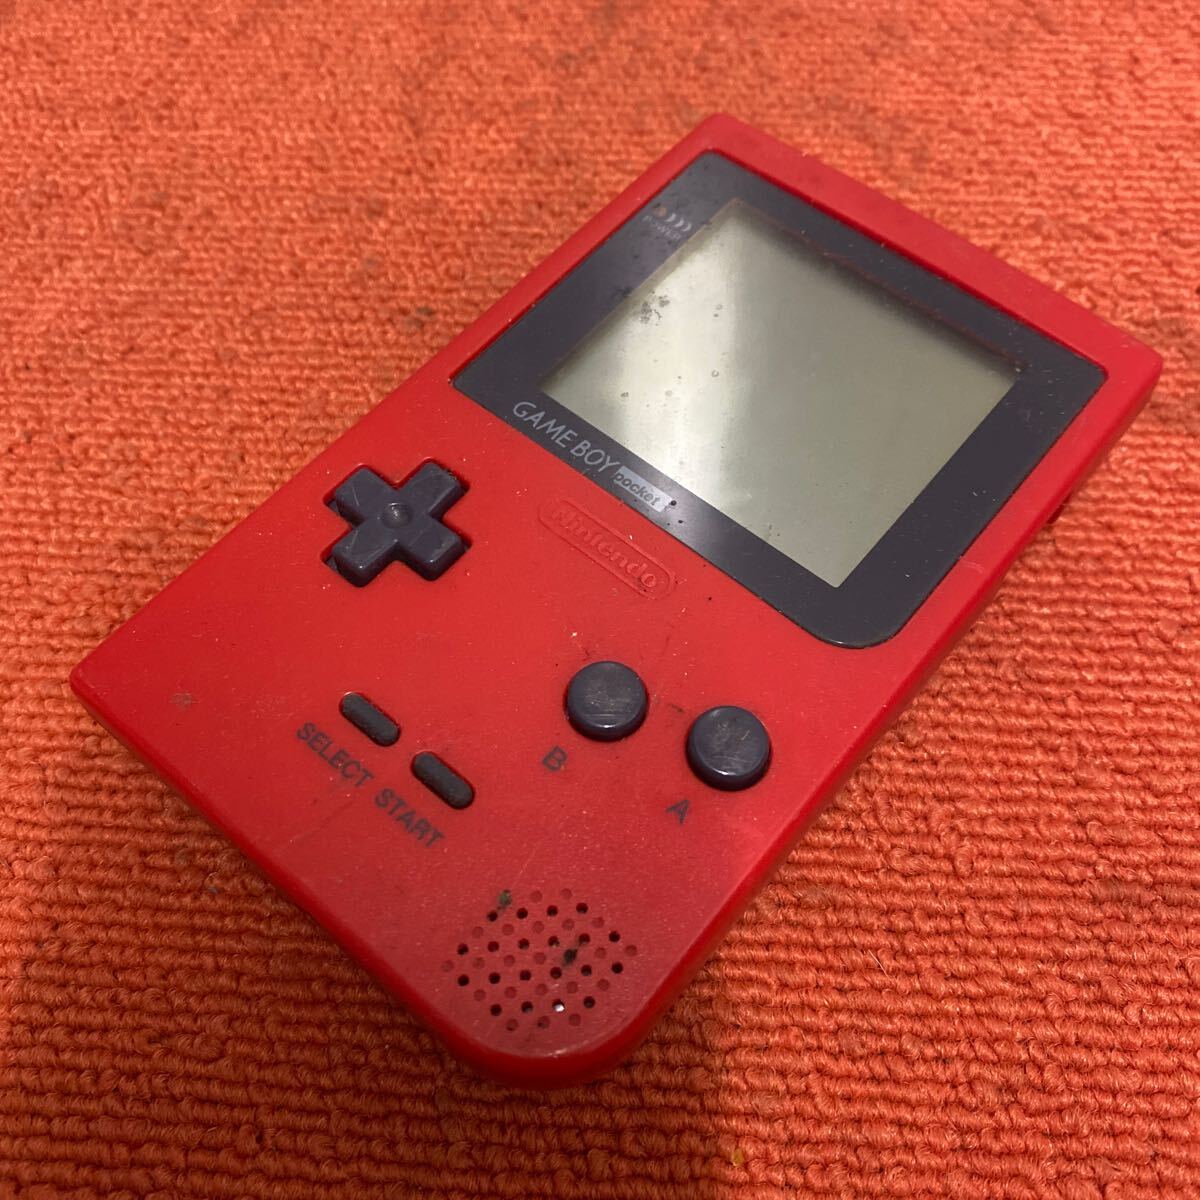 ゲームボーイポケット 本体 レッド MGB-001 GAMEBOY POCKET GBP Nintendo ニンテンドー 任天堂 中古品